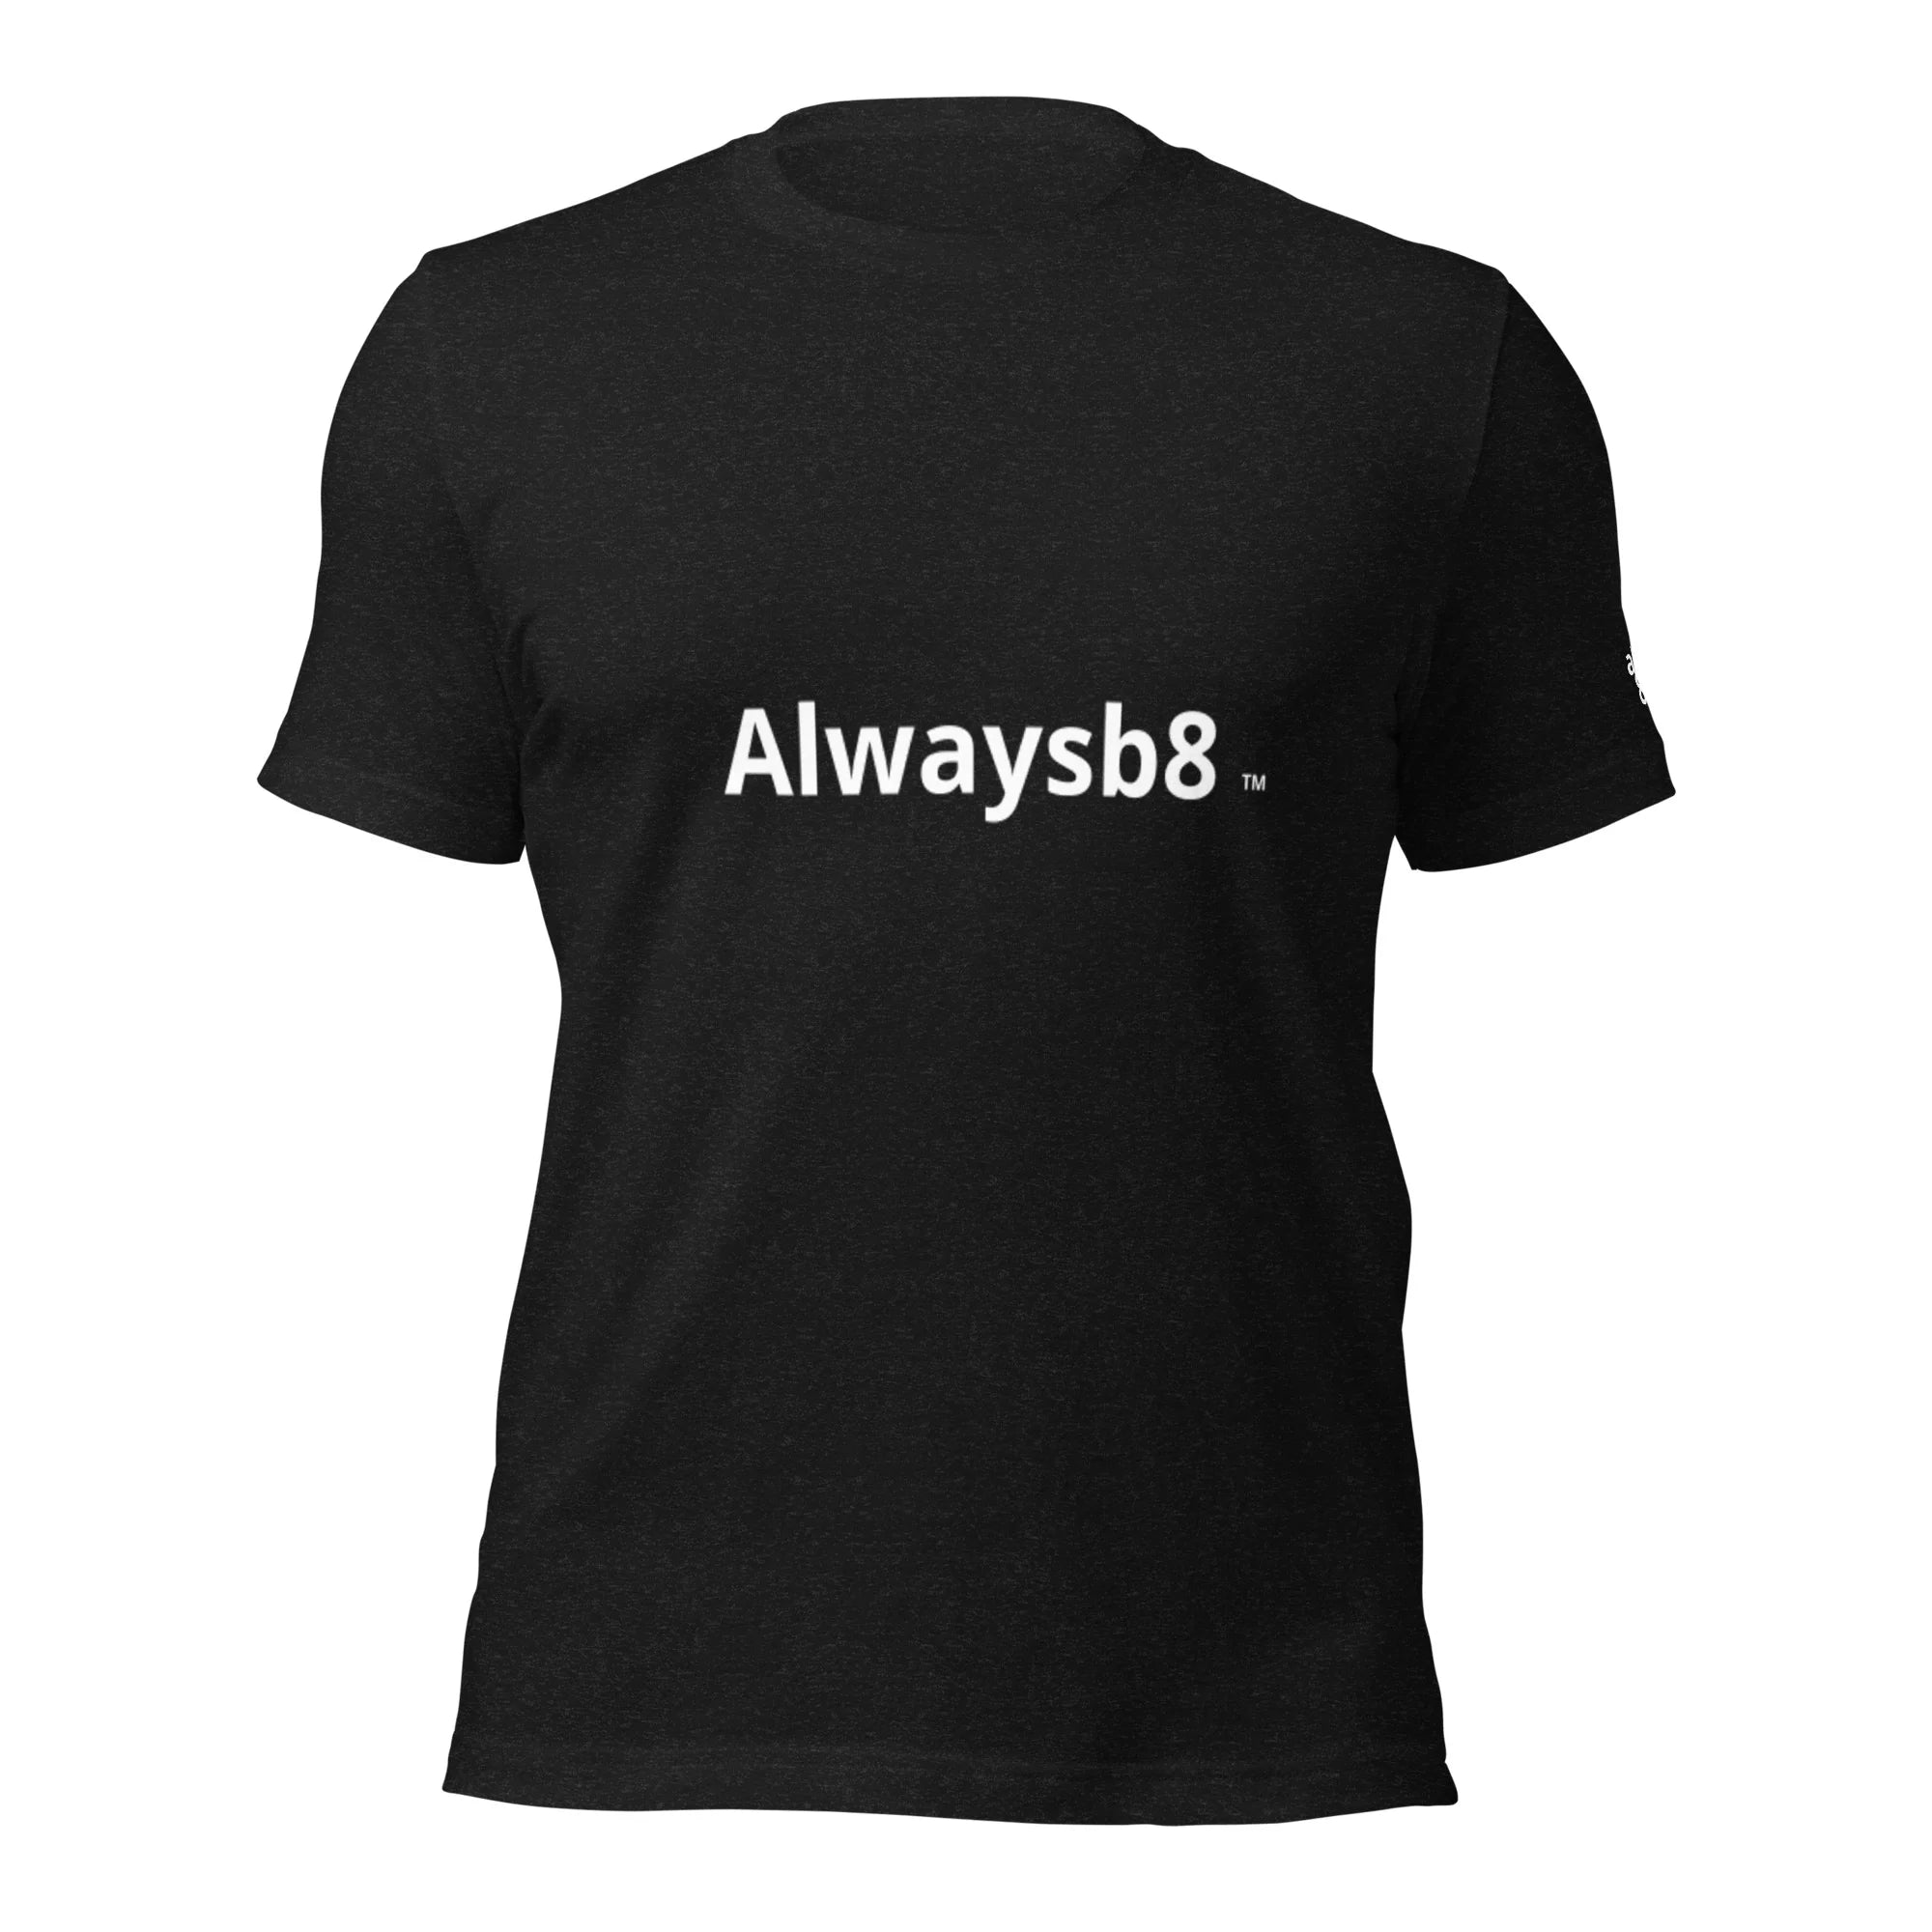 Alwaysb8